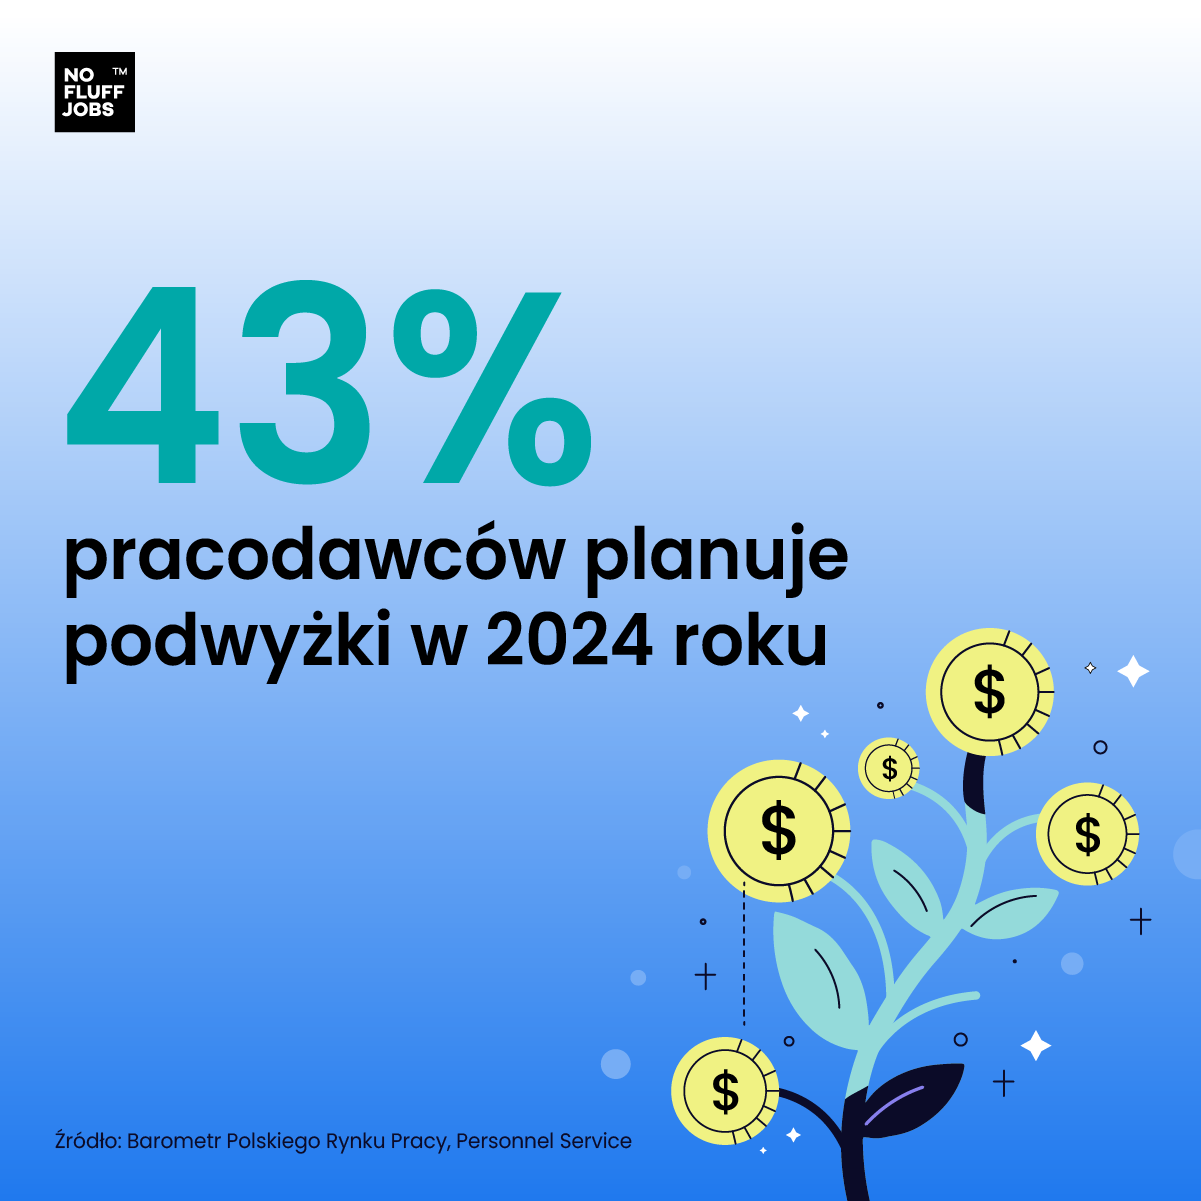 43% polskich pracodawców planuje podwyżki w 2024 r.